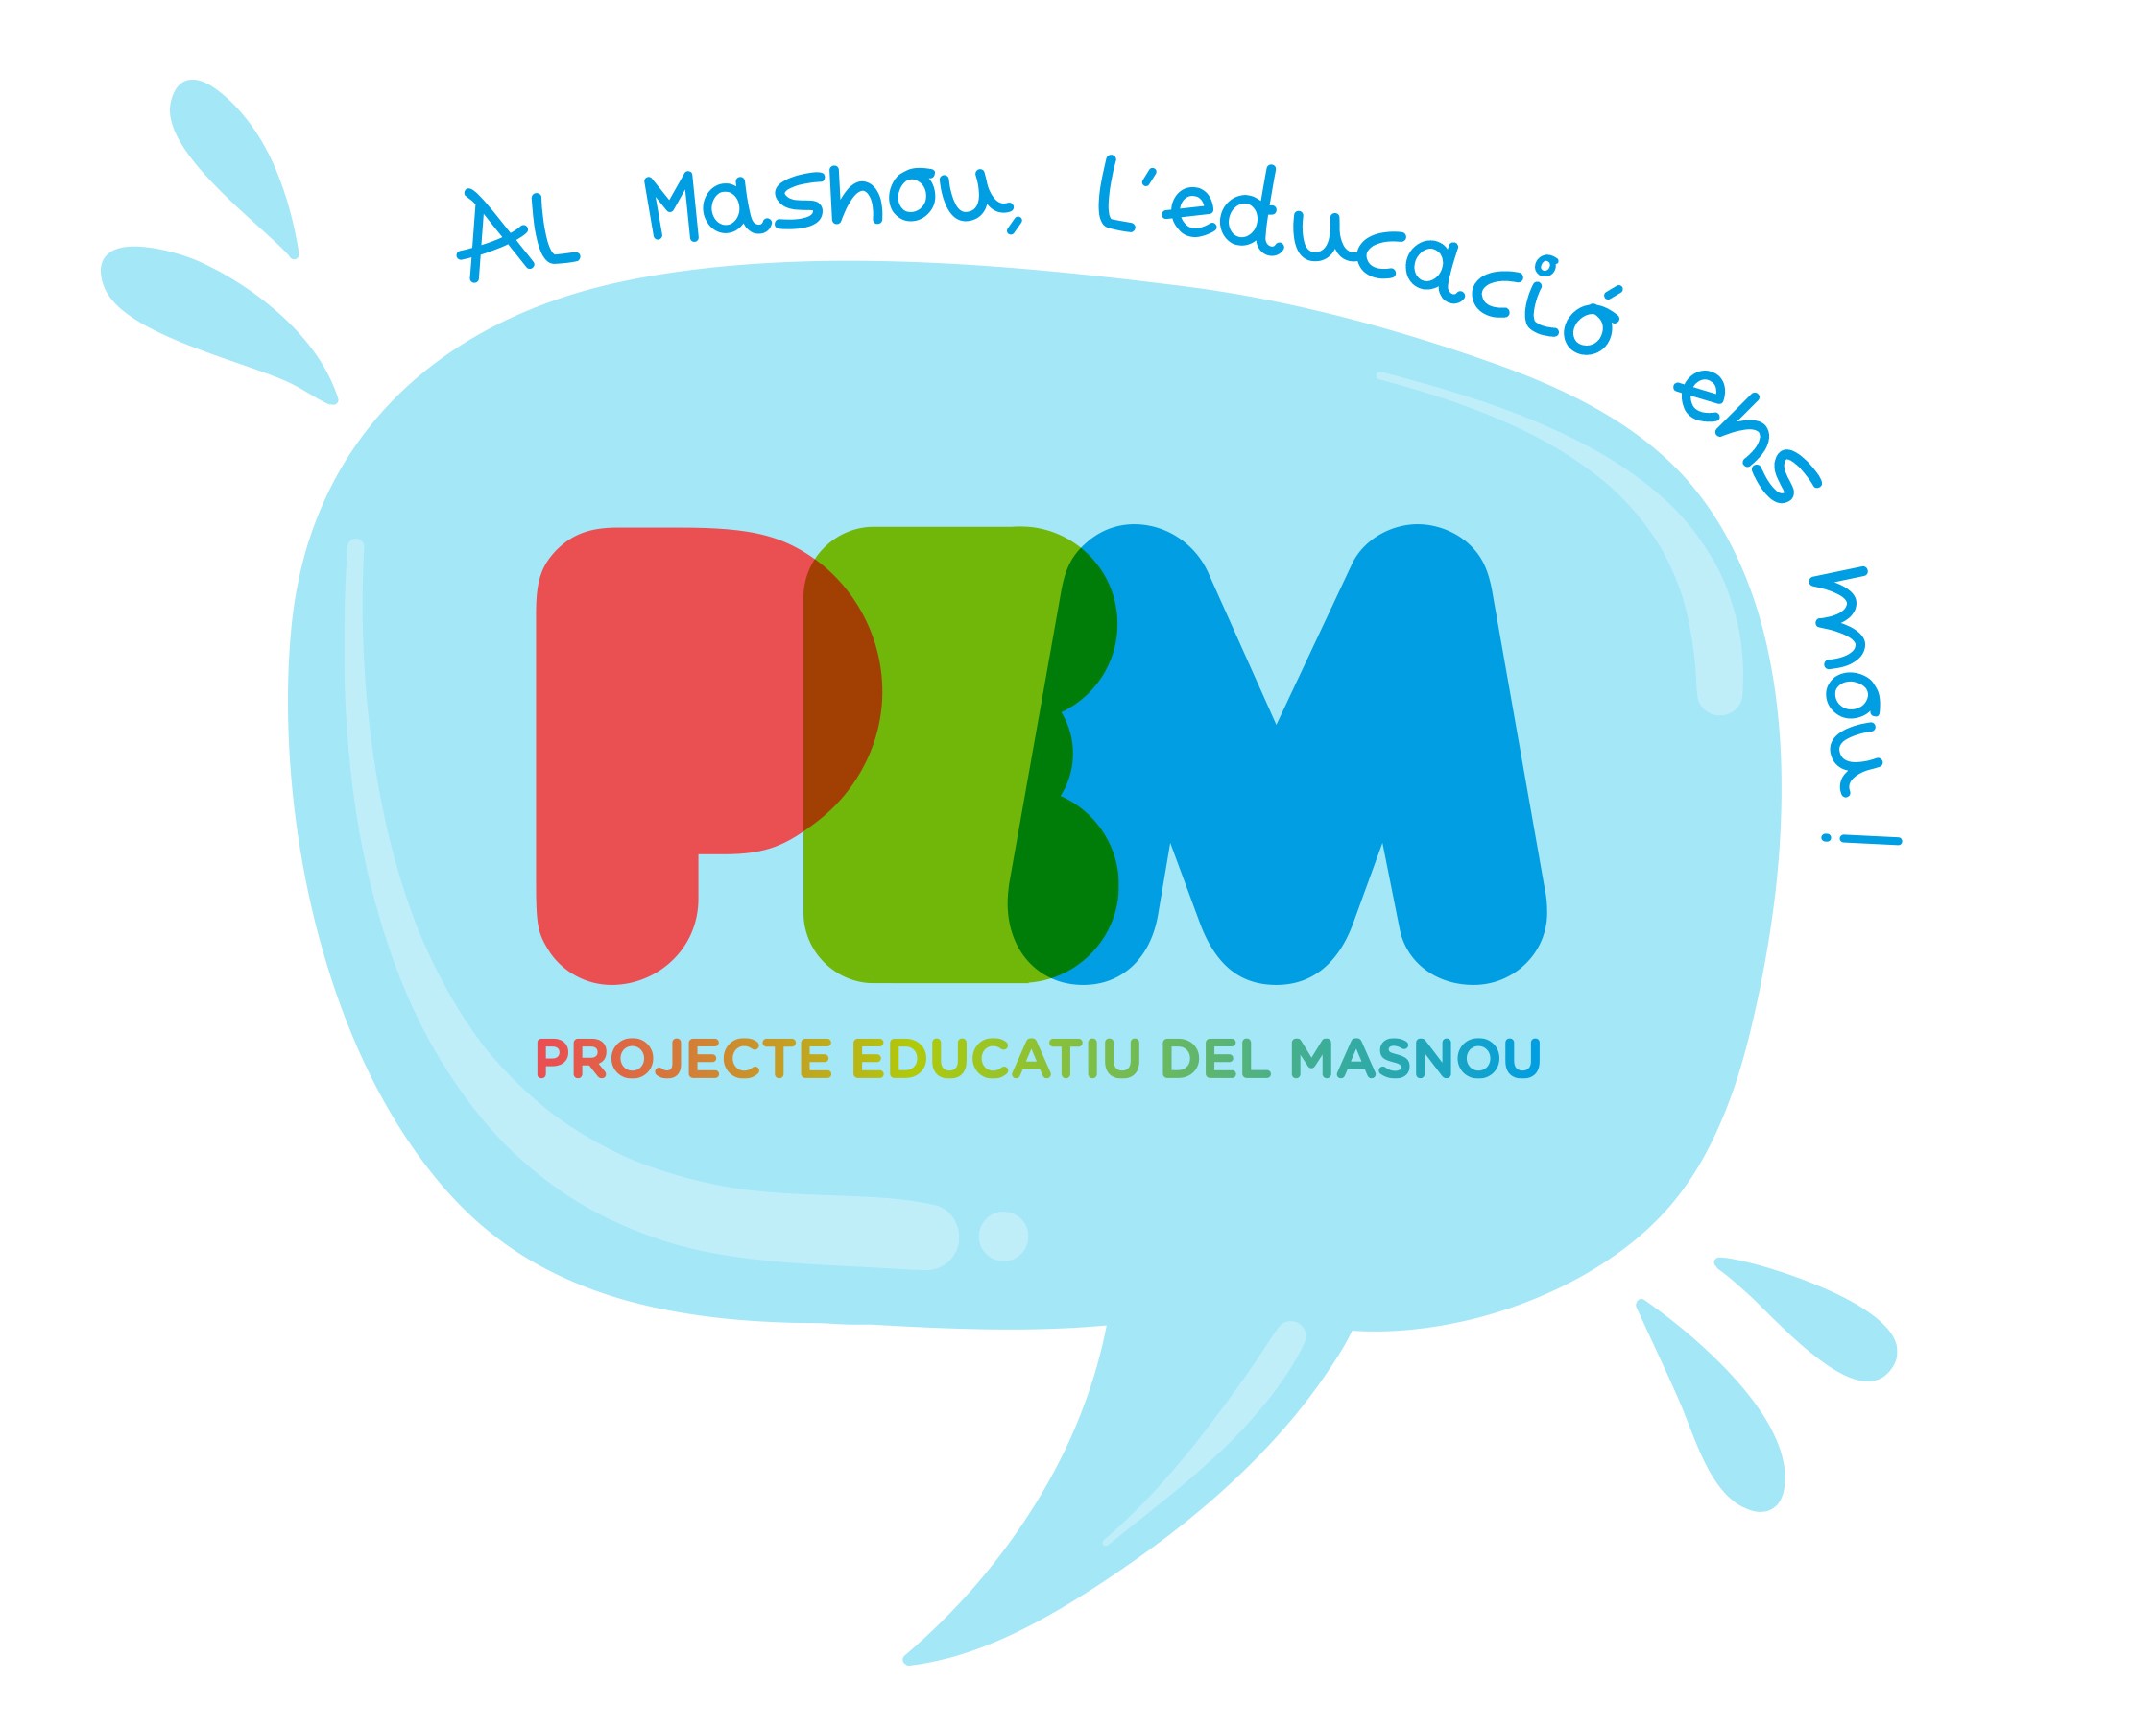 El 12 de juny, jornada participativa del Projecte educatiu del Masnou